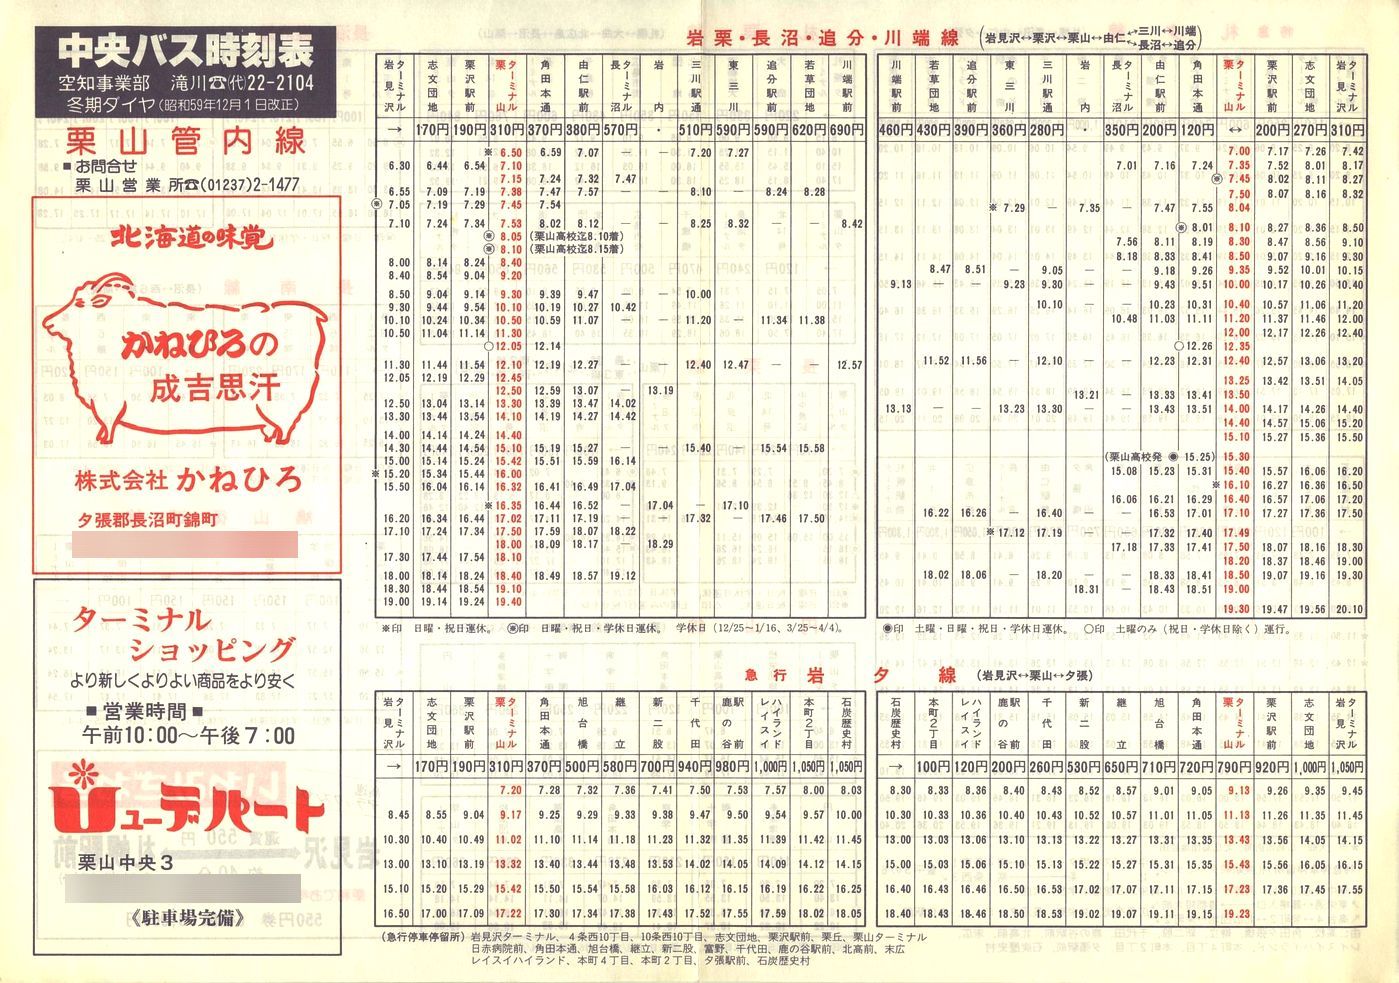 1984-12-01改正_北海道中央バス(空知)_栗山管内線時刻表表面